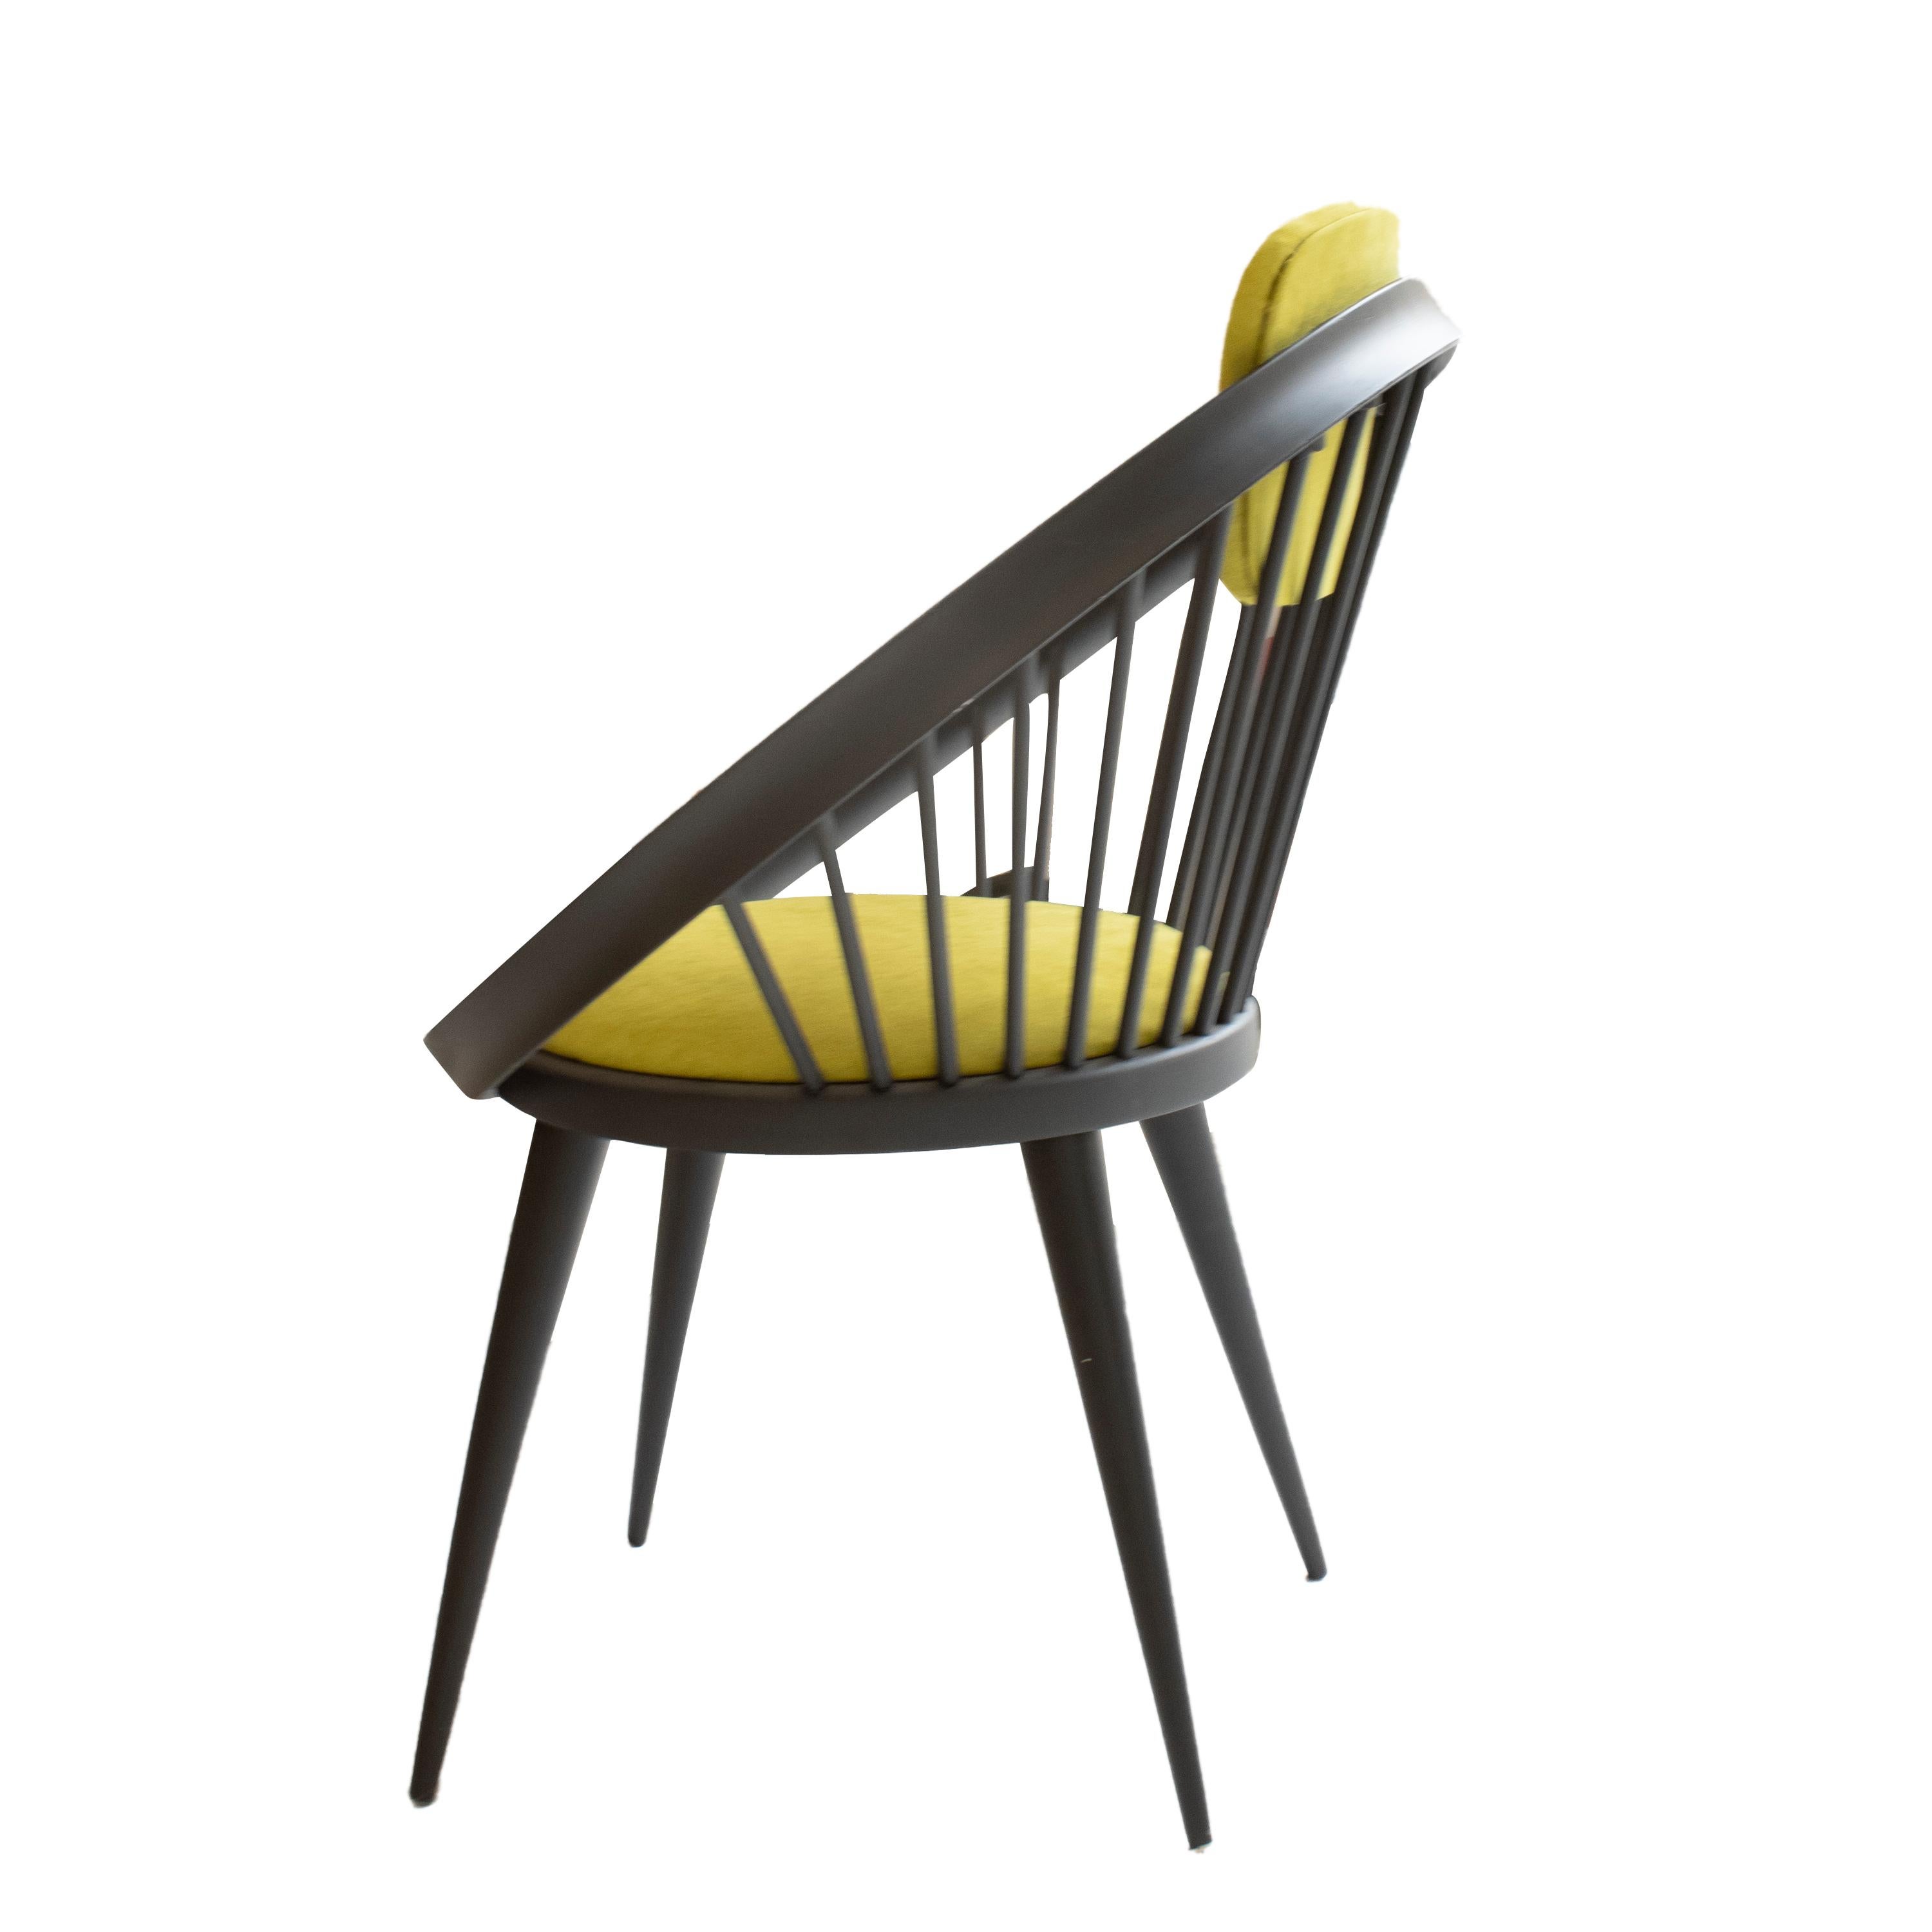 Satz von vier Sesseln, entworfen in den 1960er Jahren vom schwedischen Designer Yngve Ekström und hergestellt von seiner eigenen Marke Swedese. Der Sessel ist aus schwarz lackiertem Massivholz gefertigt, Sitzfläche und Rückenlehne sind mit grünem